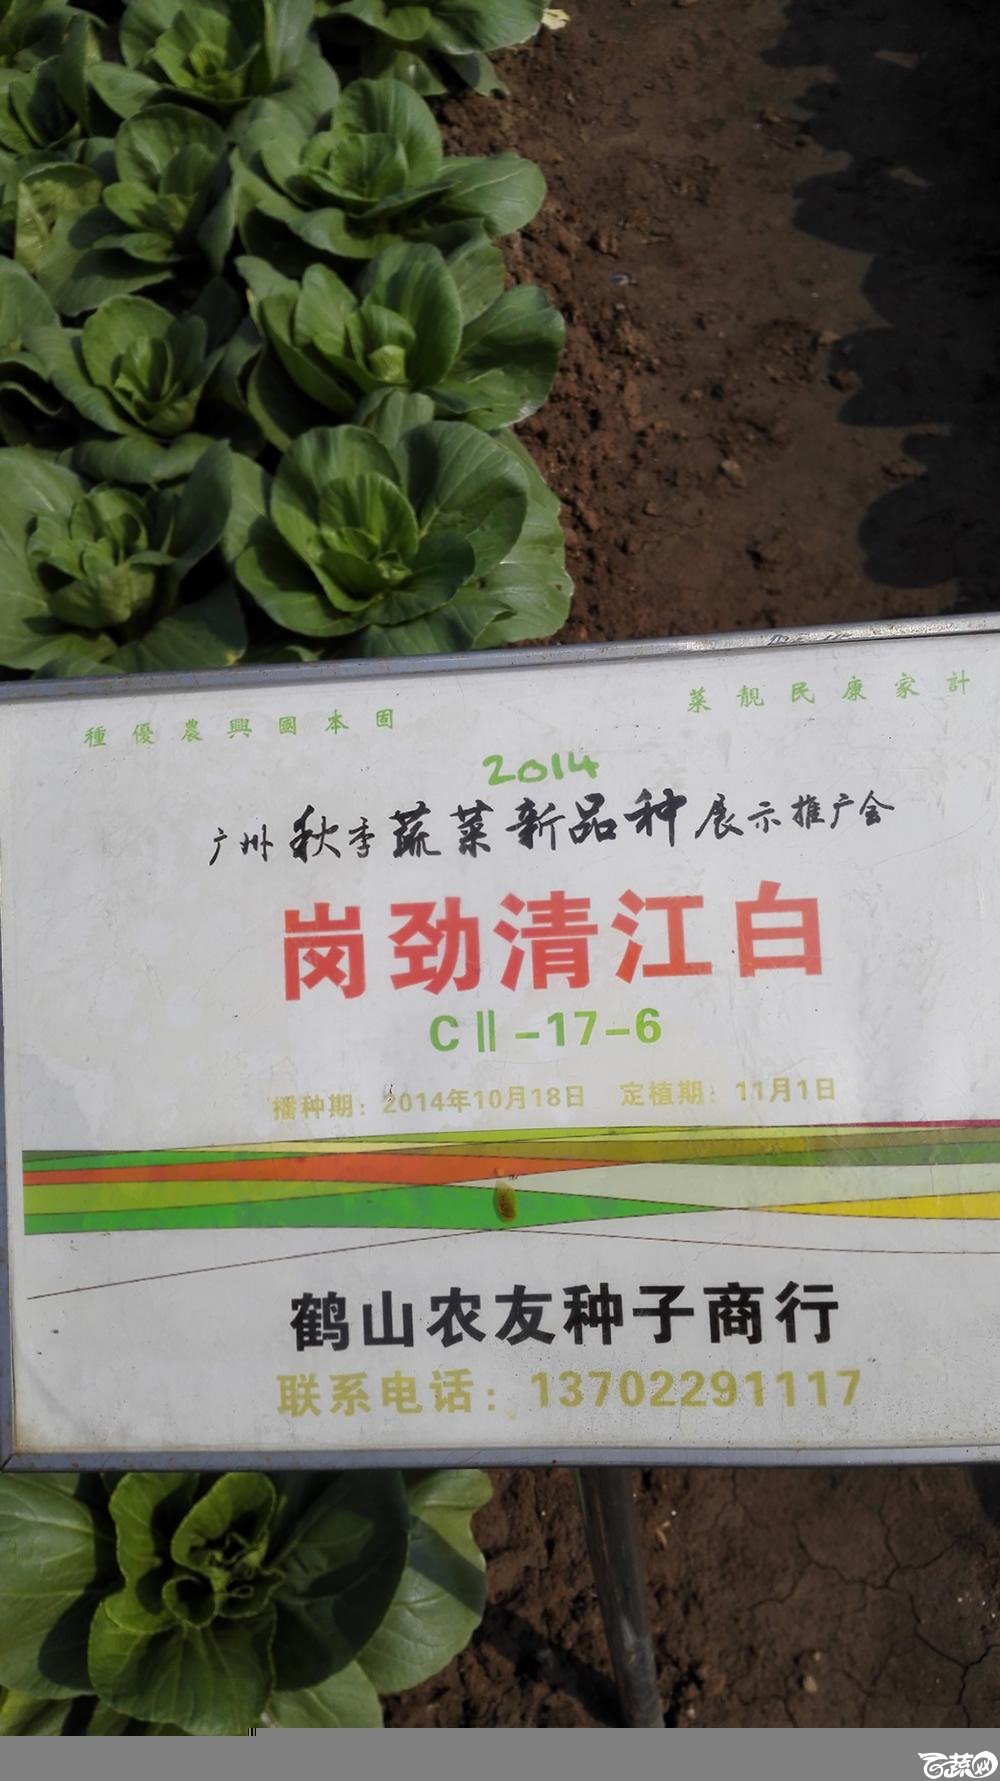 2014年12月10号广州市农科院南沙秋季蔬菜新品种展示会_叶菜_162.jpg